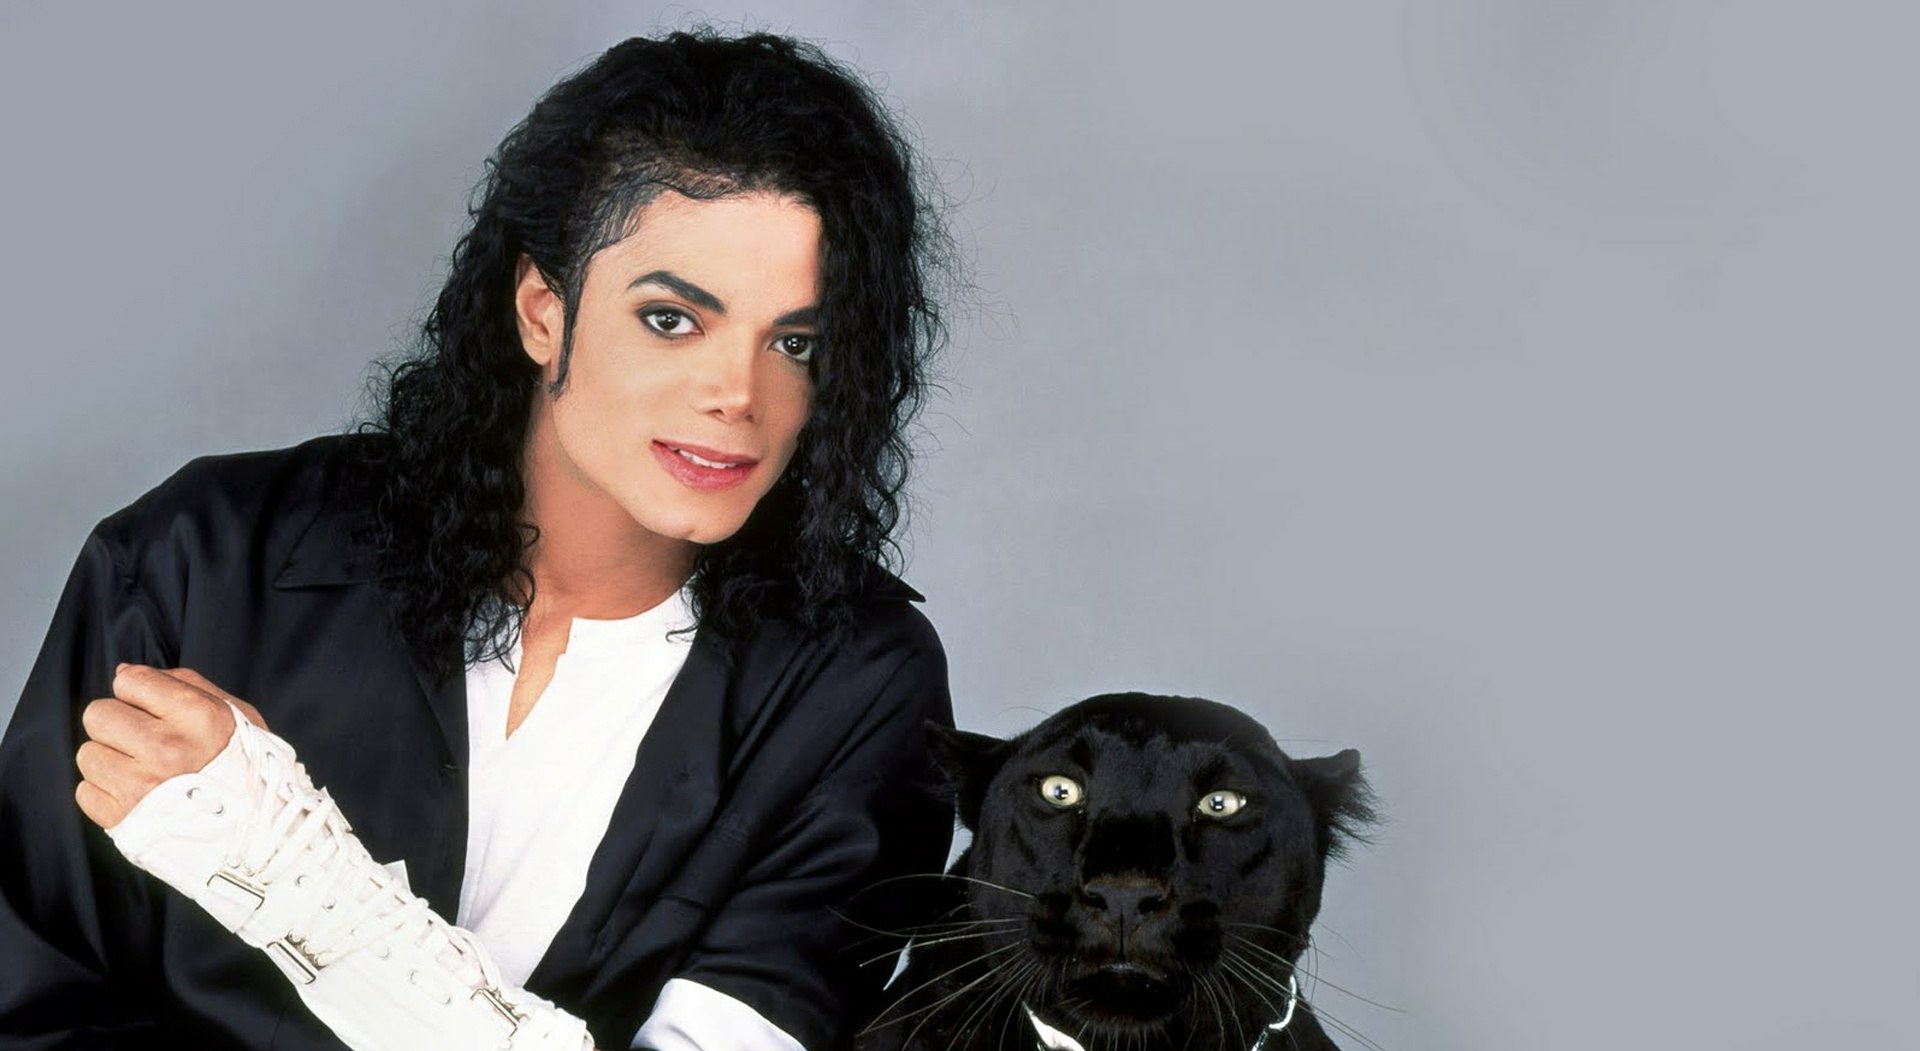 🎬 Стало відомо, хто зіграє Даяну Росс у байопіку про Майкла Джексона